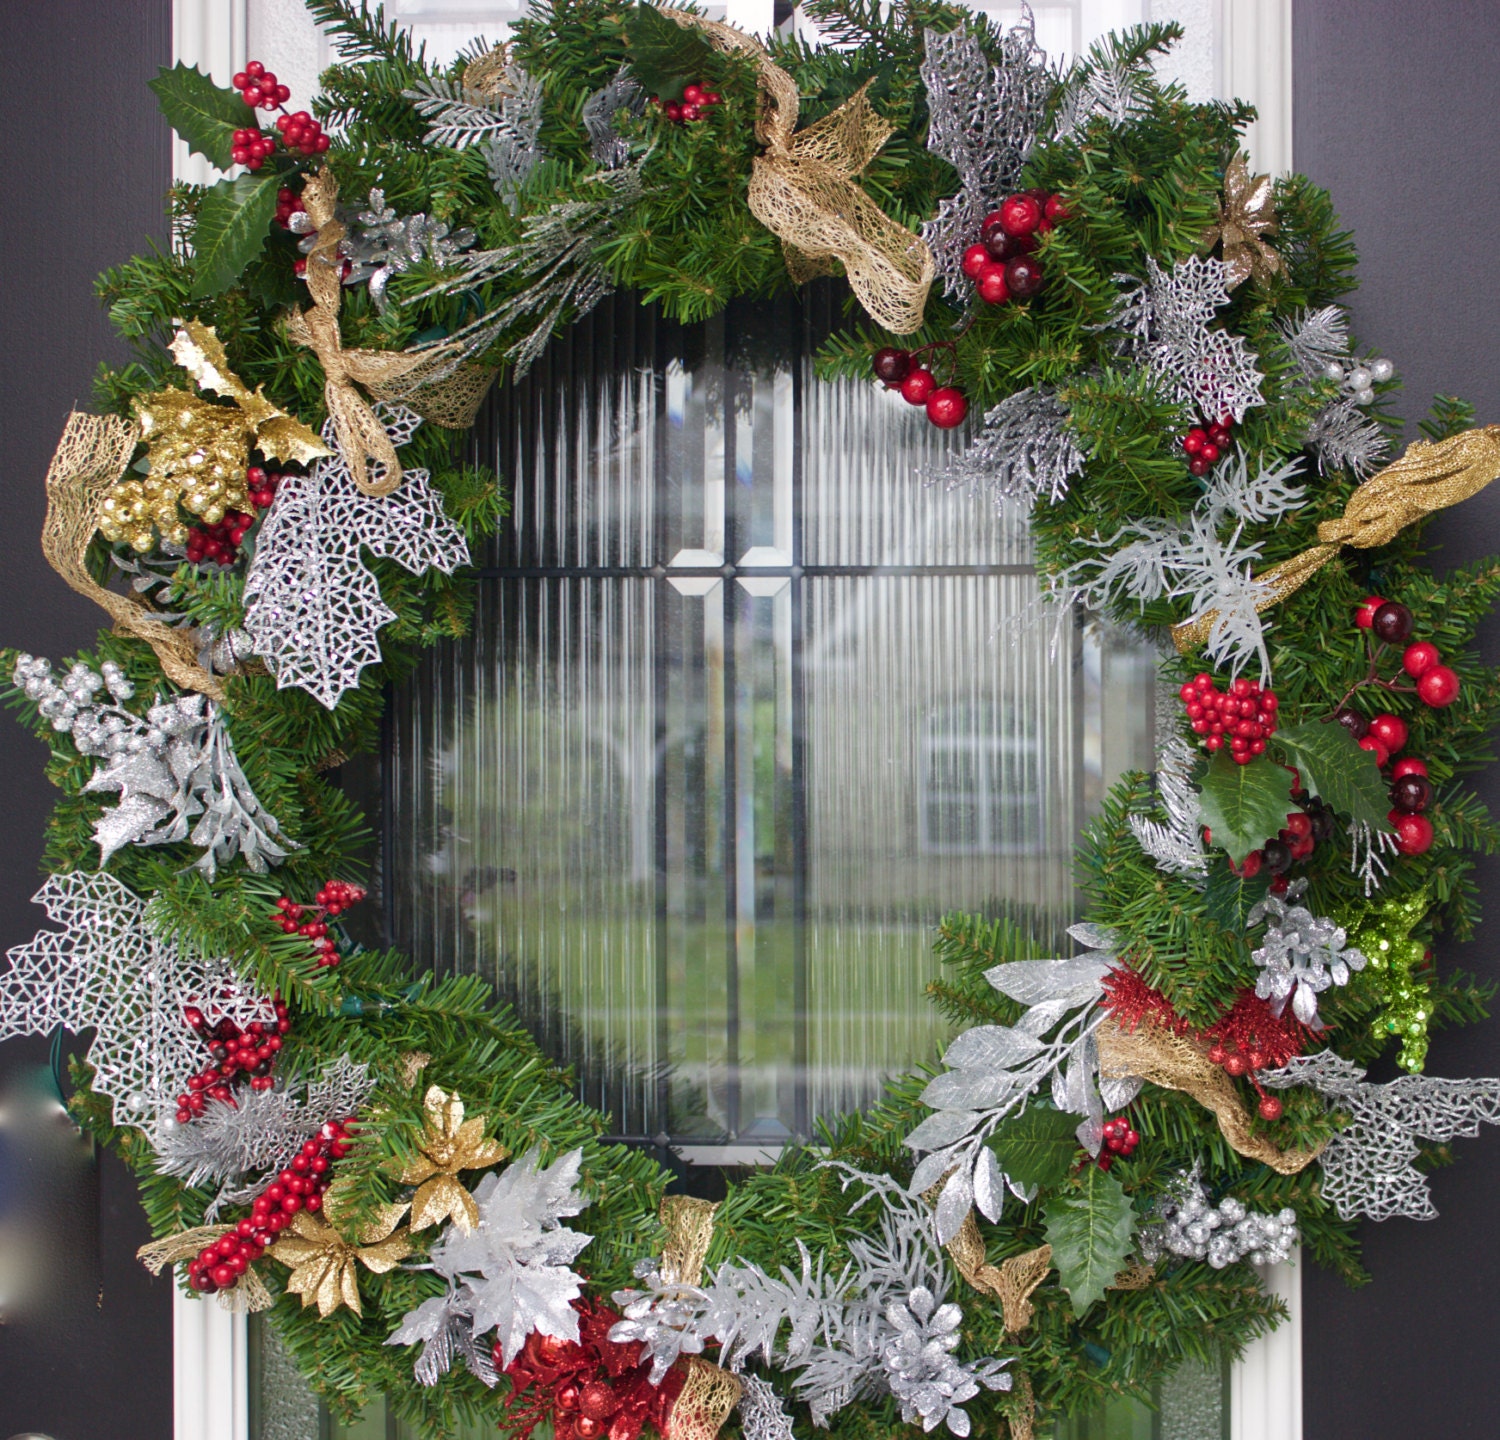 XL Christmas Wreath xl holiday wreath by PrettyHomeShop on Etsy